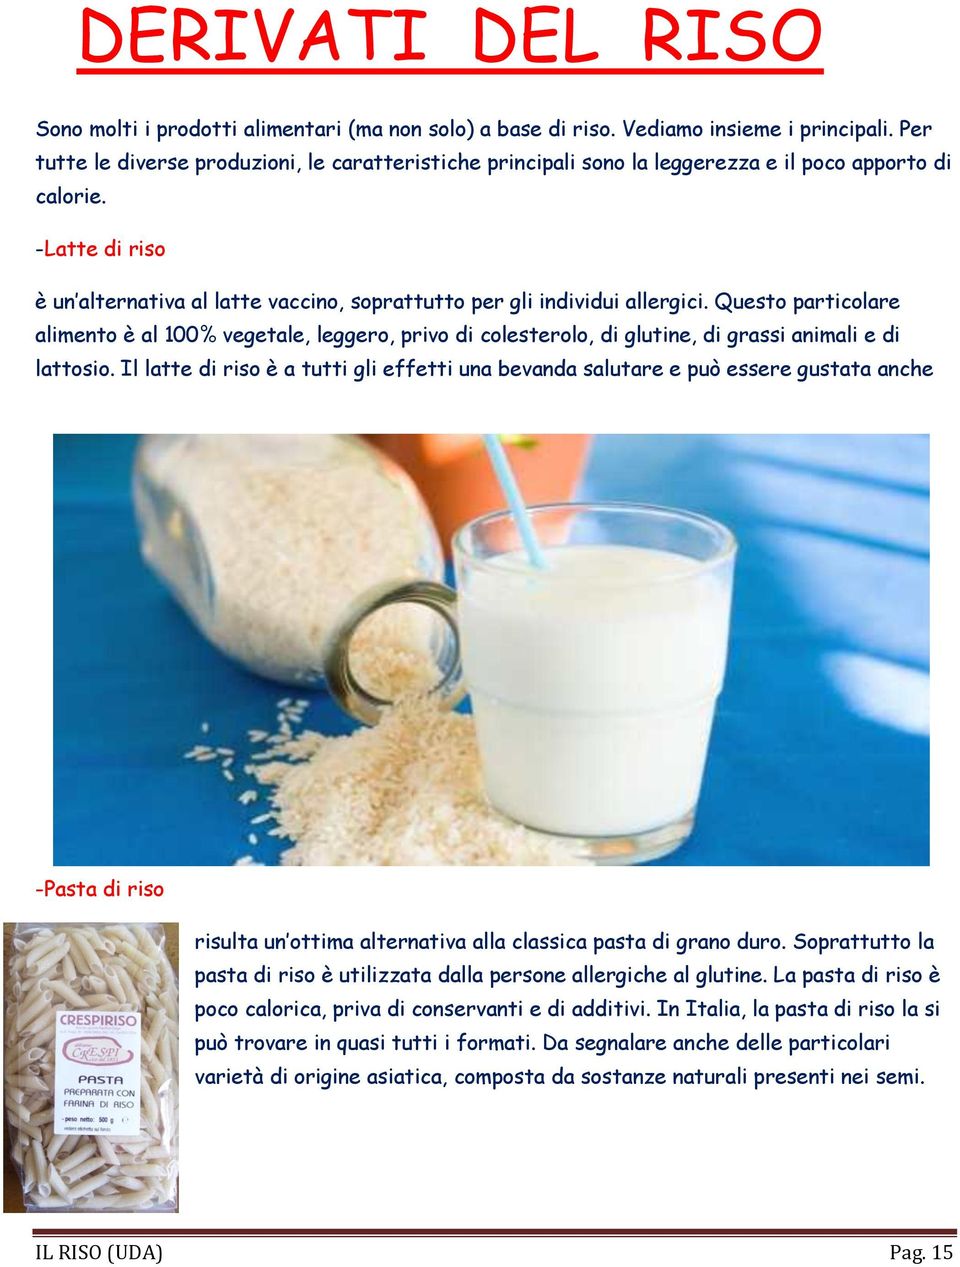 -Latte di riso è un alternativa al latte vaccino, soprattutto per gli individui allergici.